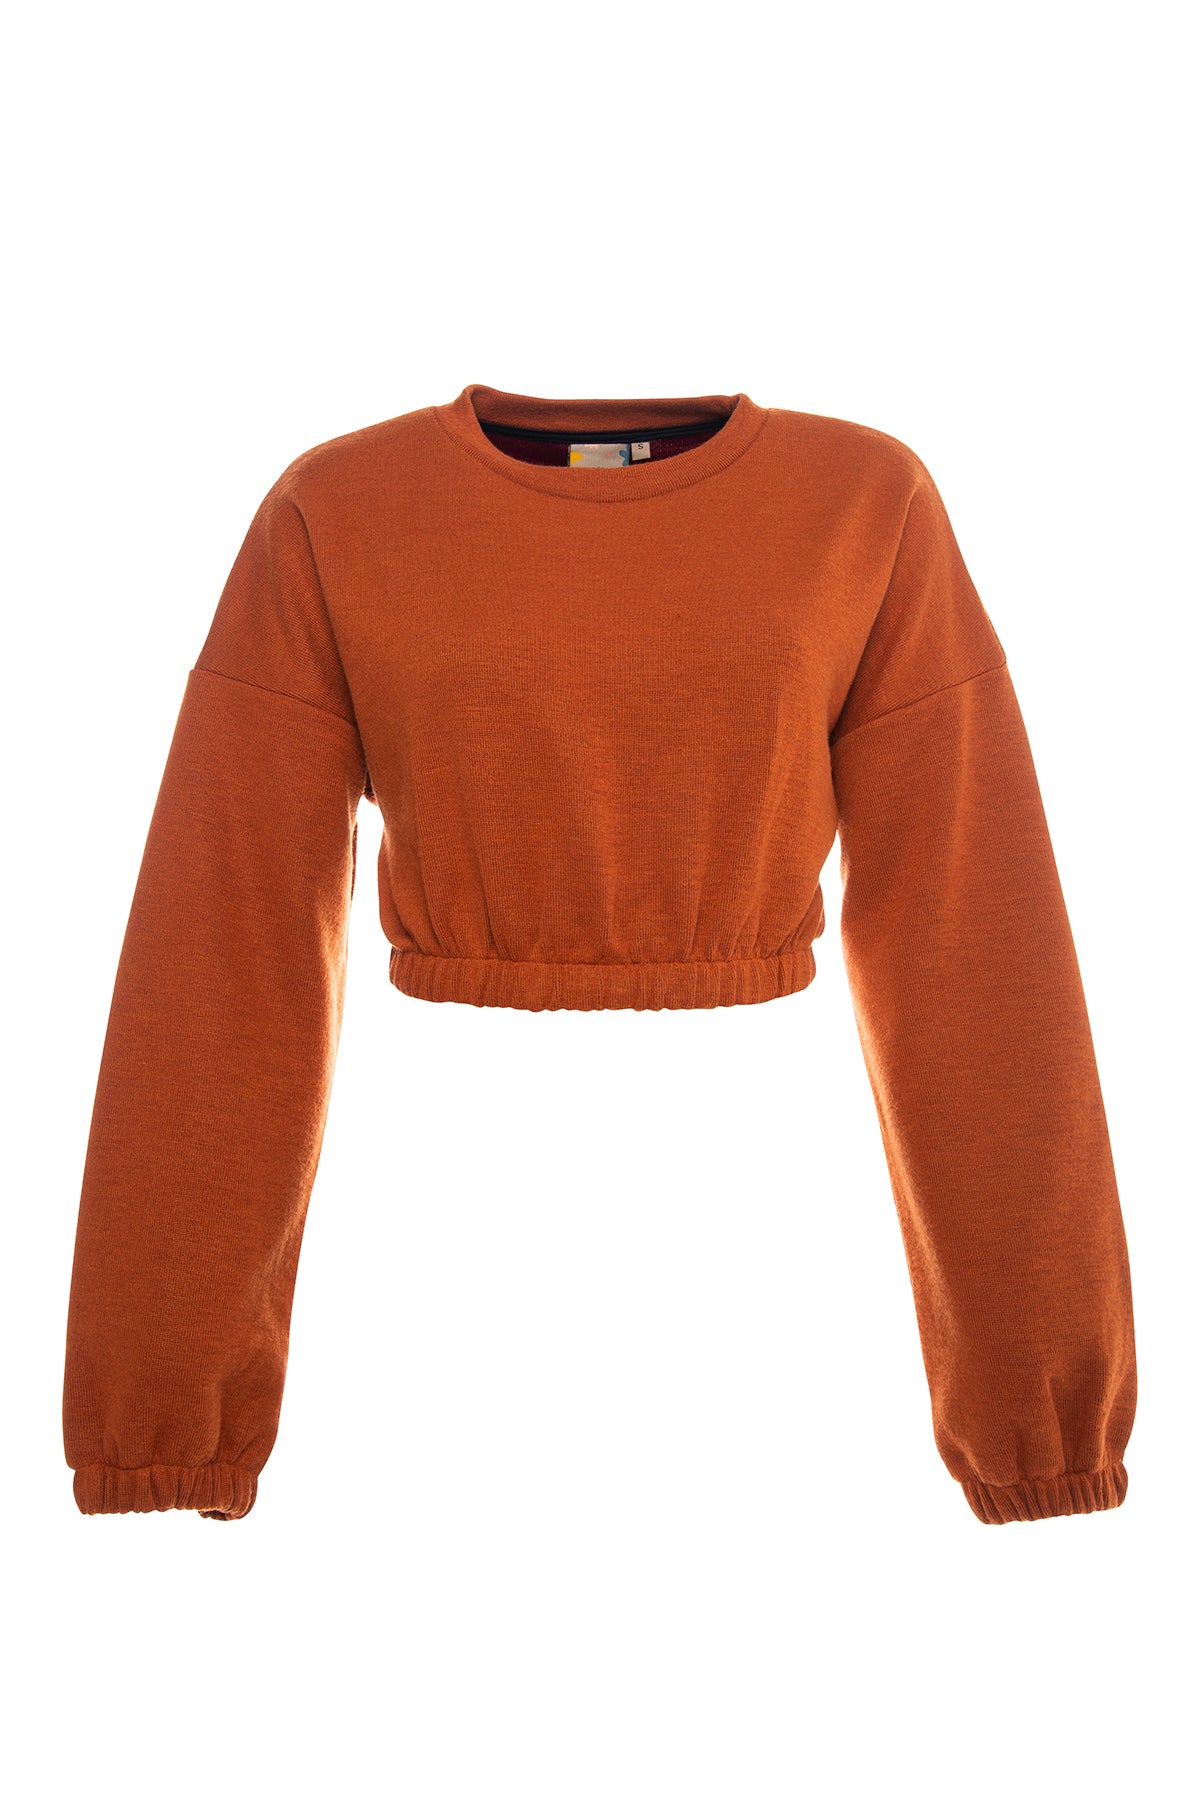 Bee & Alpaca Women's Yellow / Orange Fresh Crop Top Sweatshirt - Orange